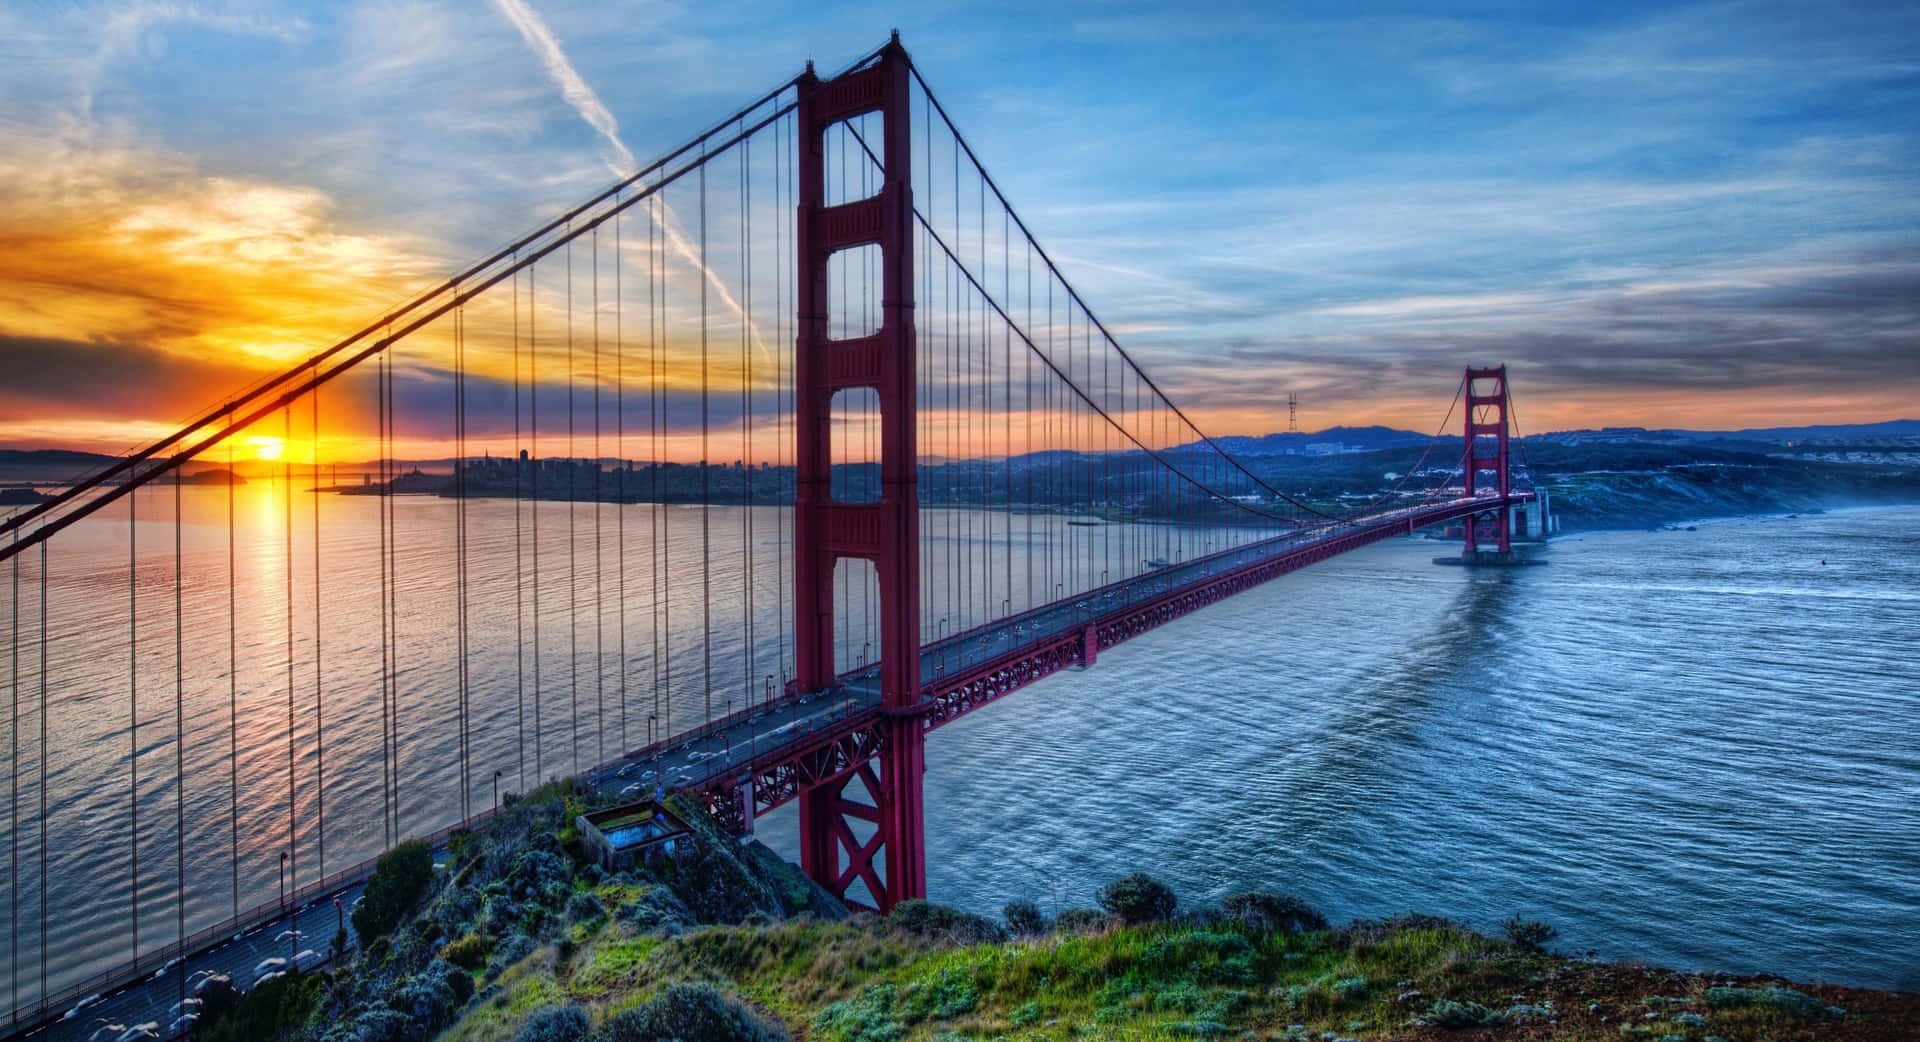 Goldengate Bridge Mit Sonnenuntergang - Bester Hintergrund Für San Francisco.